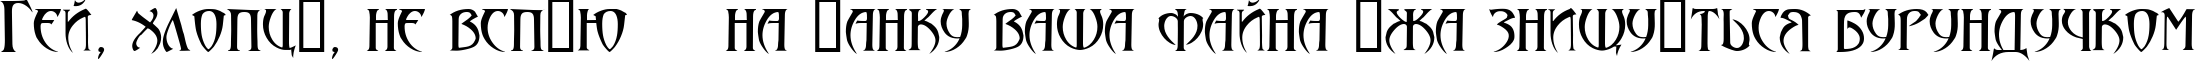 Пример написания шрифтом Arthur Gothic текста на украинском